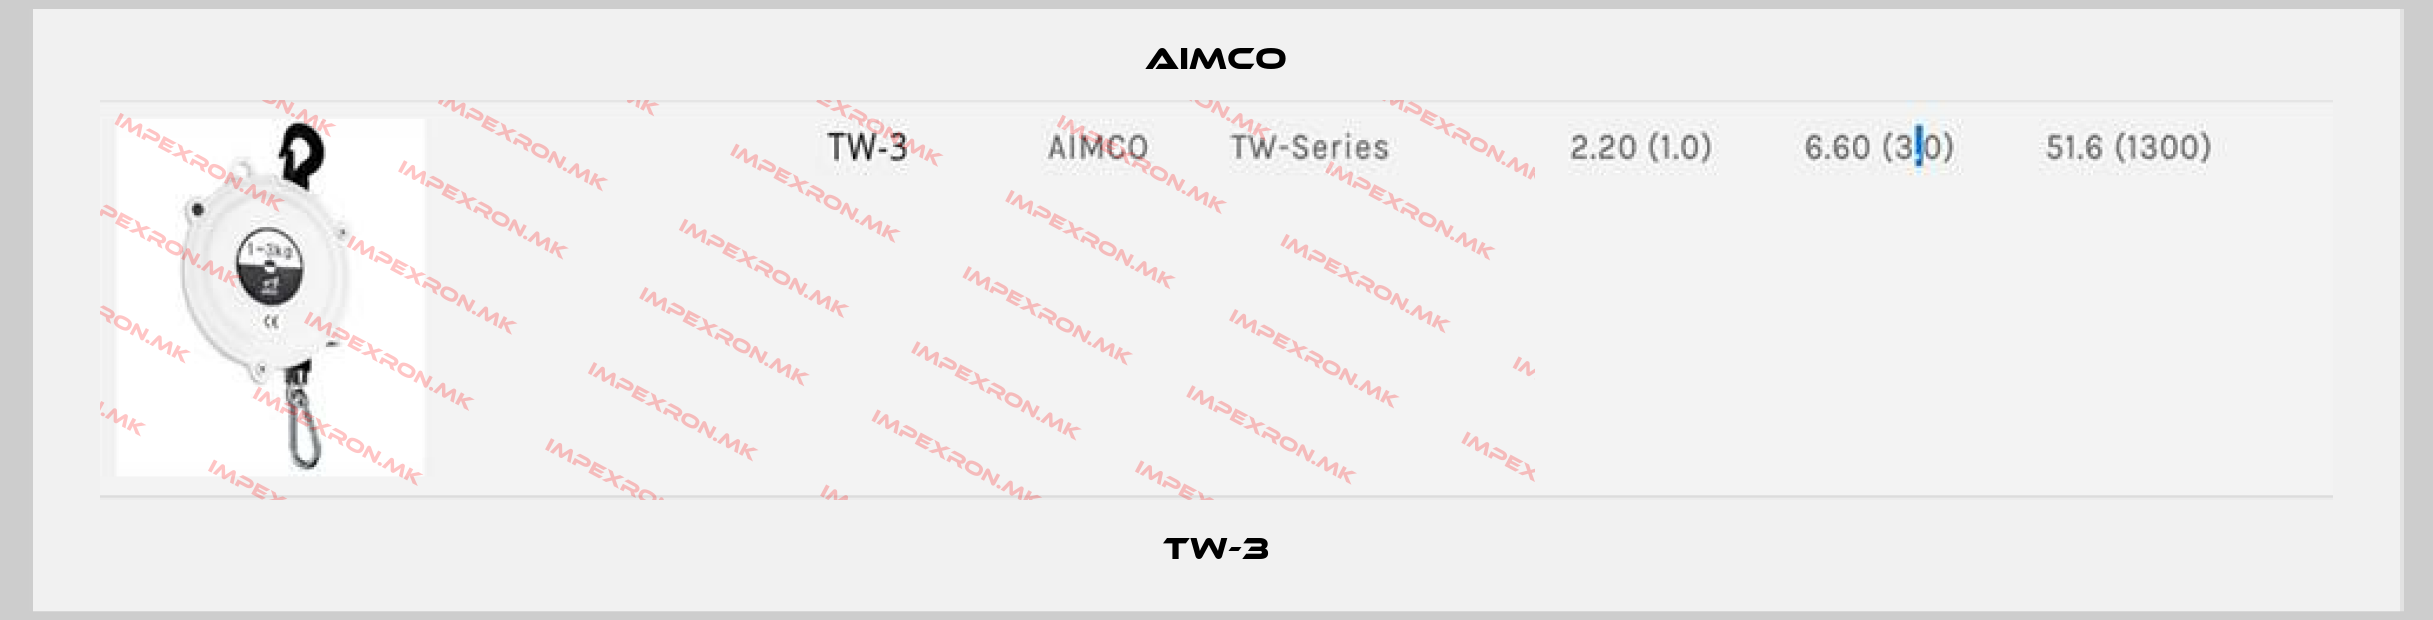 AIMCO-TW-3price